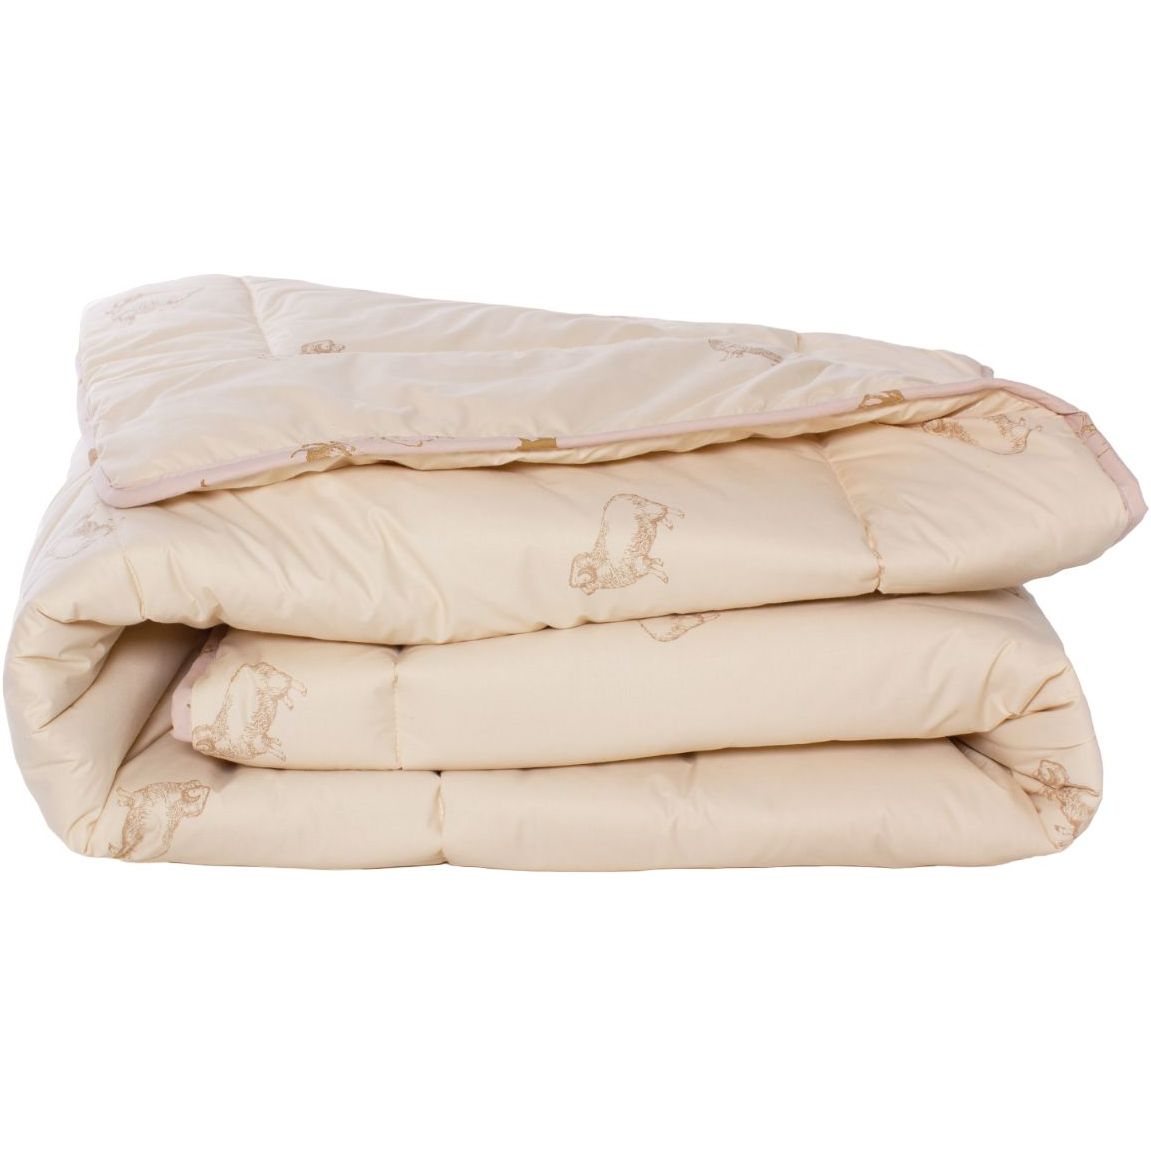 Одеяло шерстяное MirSon Gold Camel №023, демисезонное, 155x215 см, кремовое - фото 1